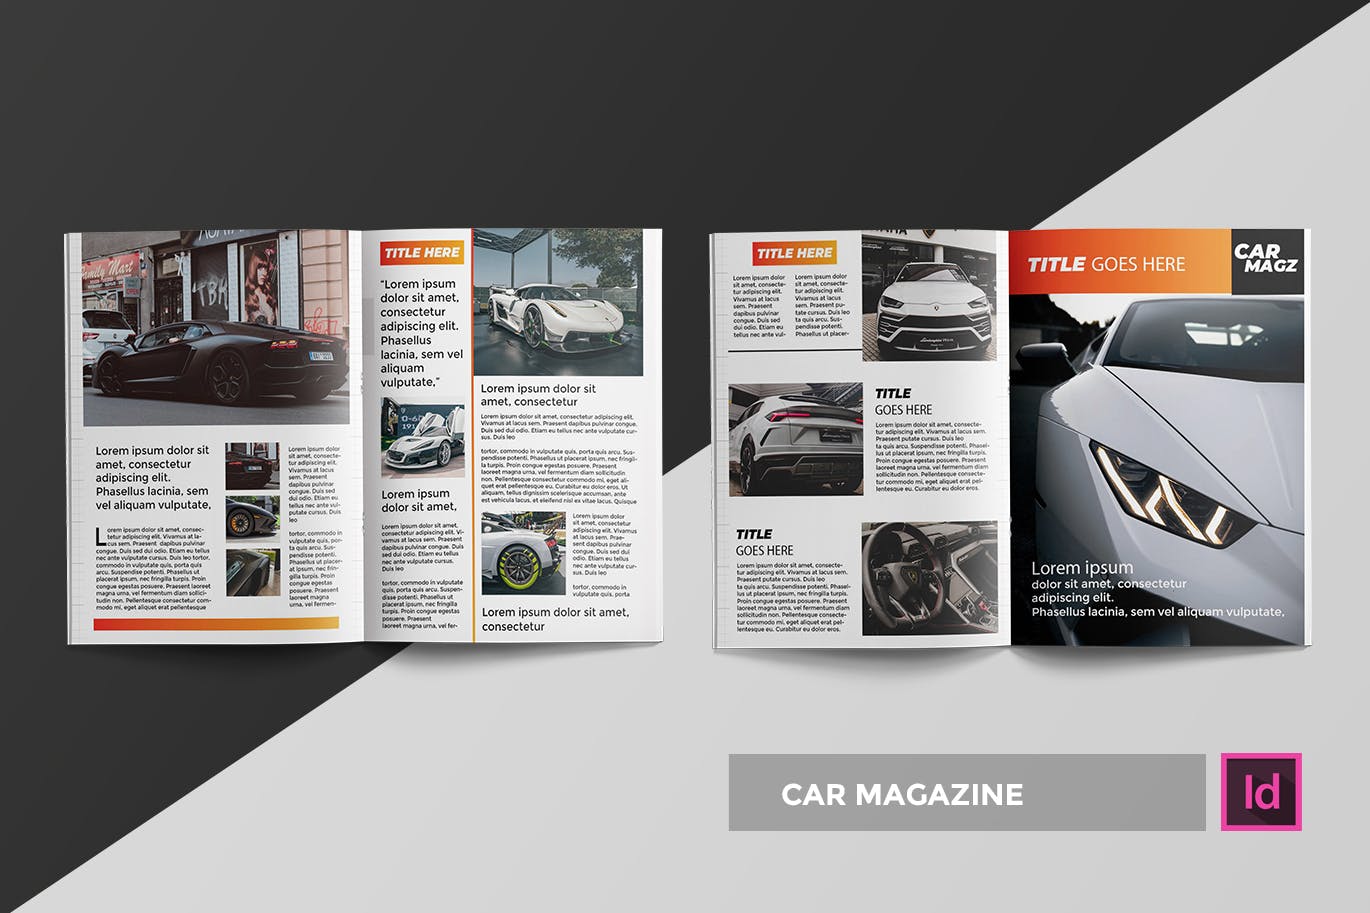 汽车主题素材库精选杂志设计InDesign模板 Car | Magazine Template插图(1)